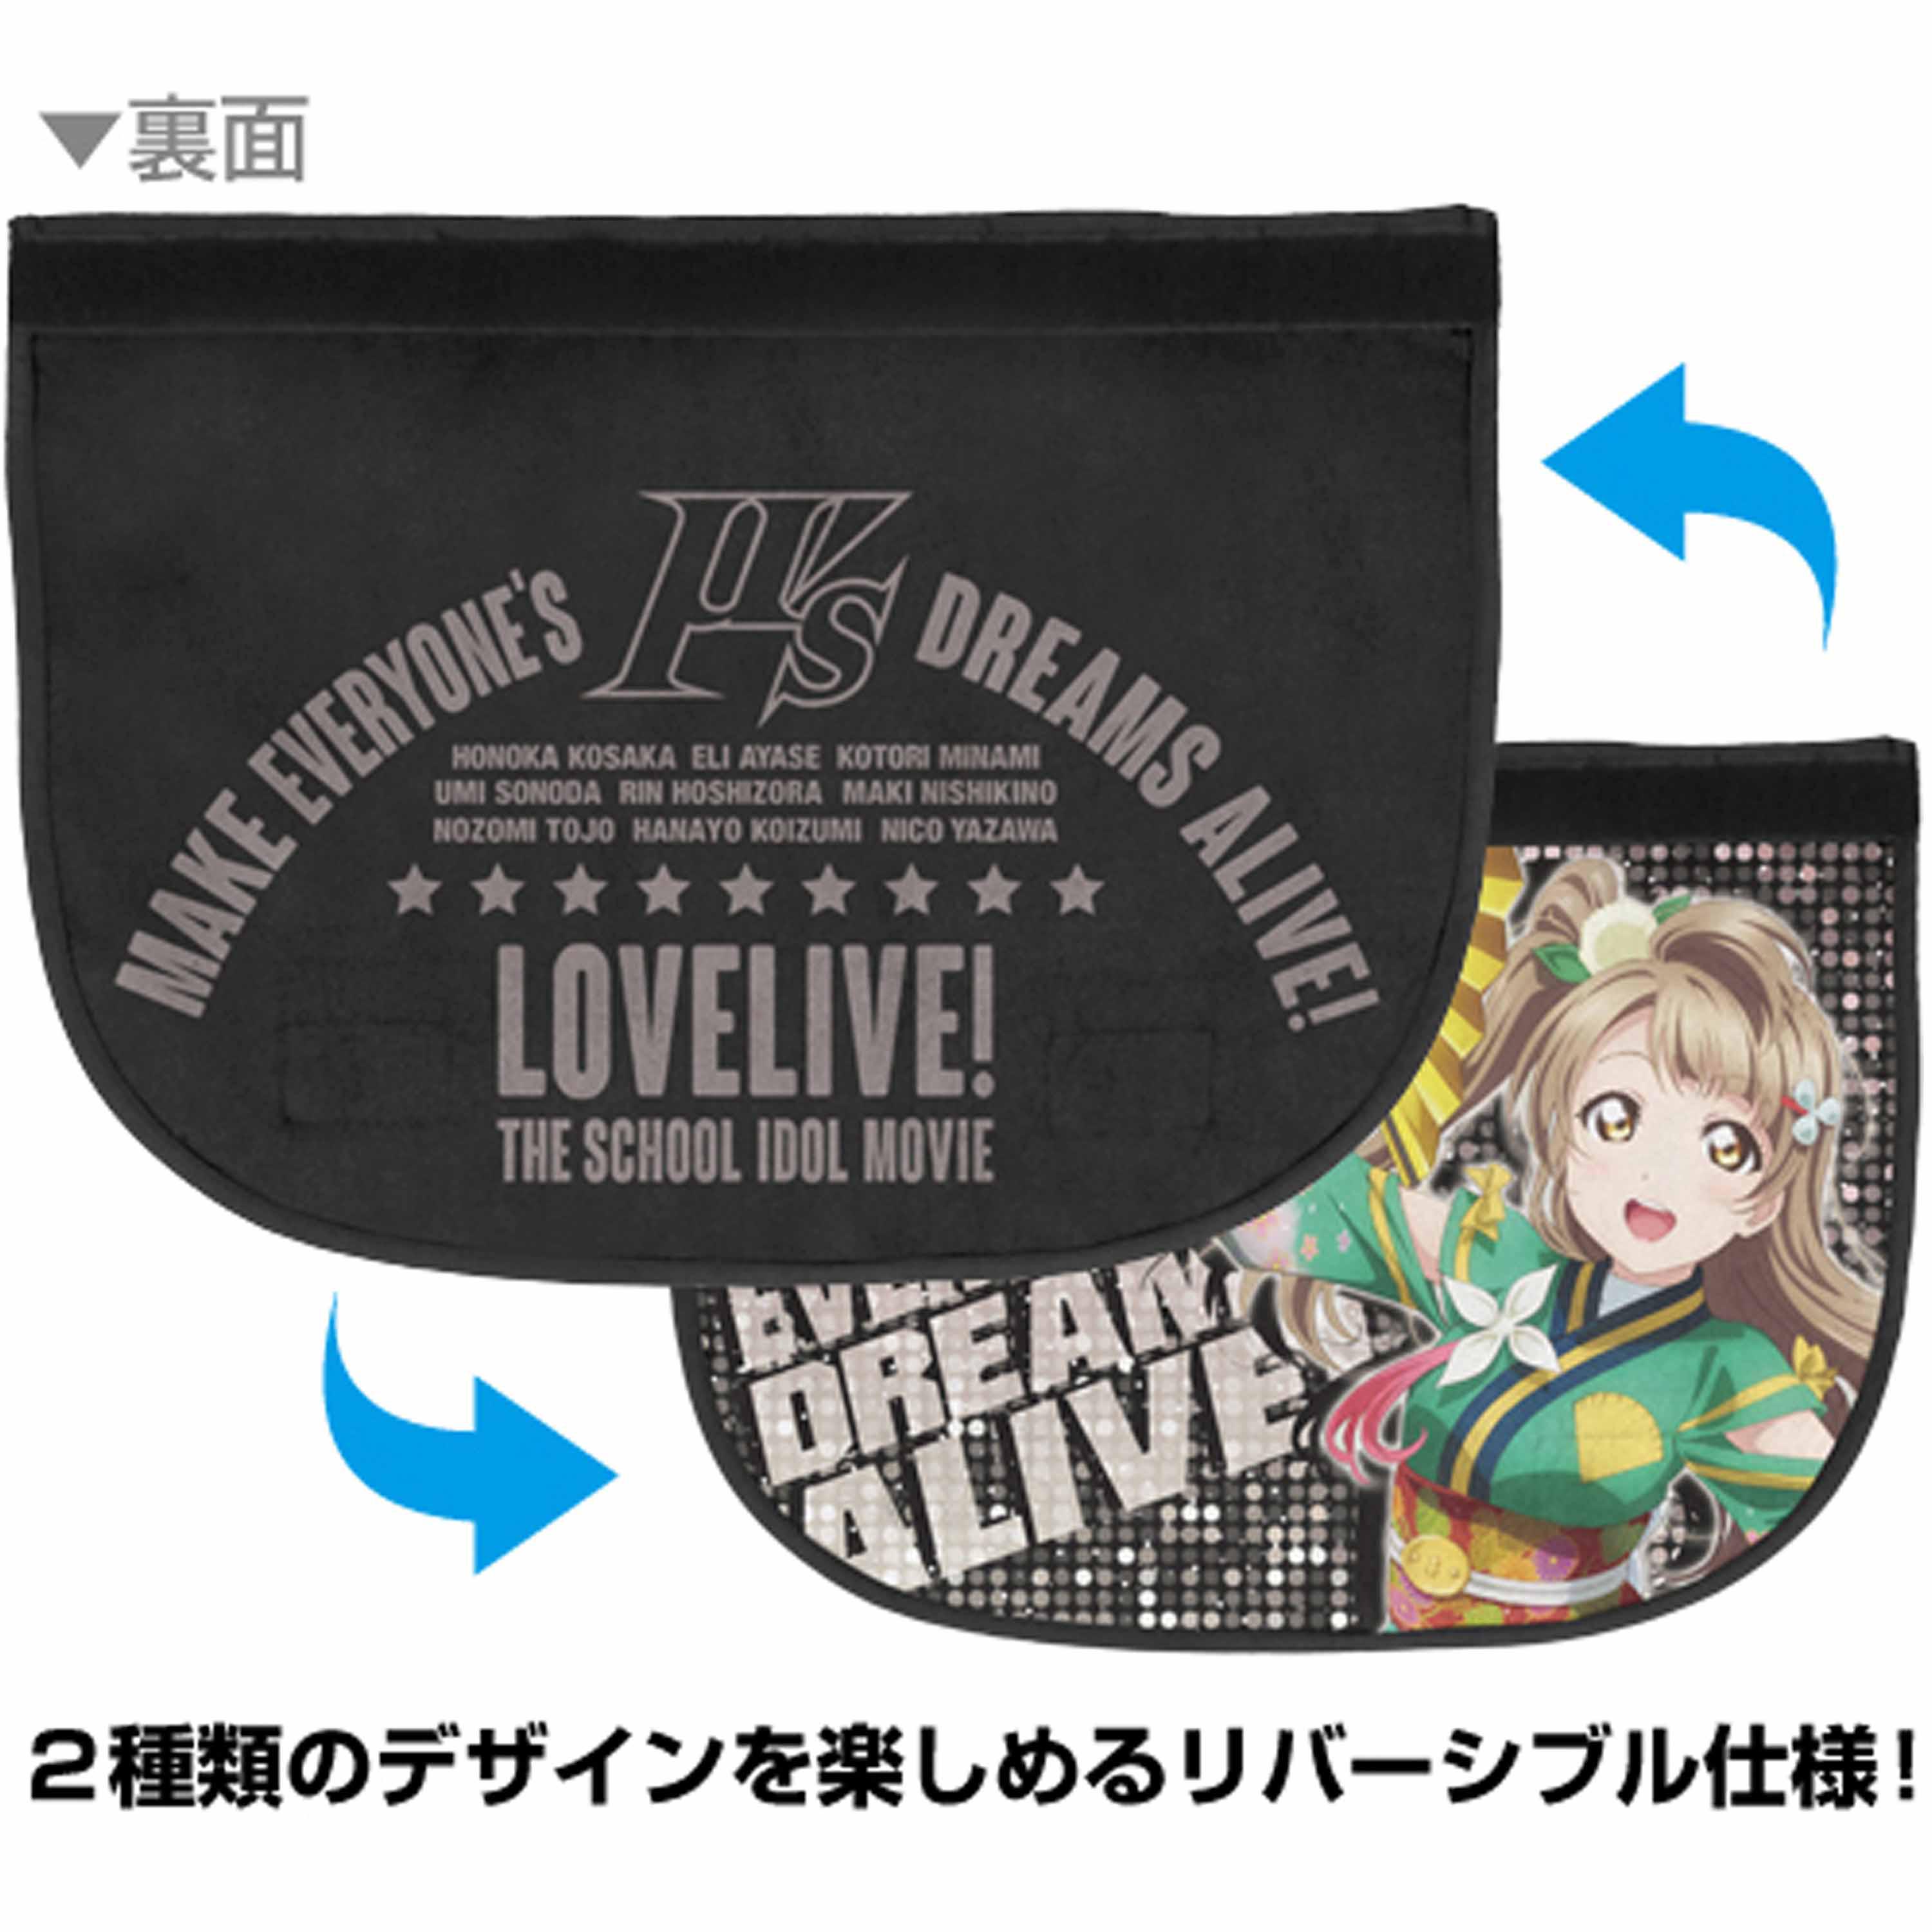 Minami Kotori Reversible Messenger Bag